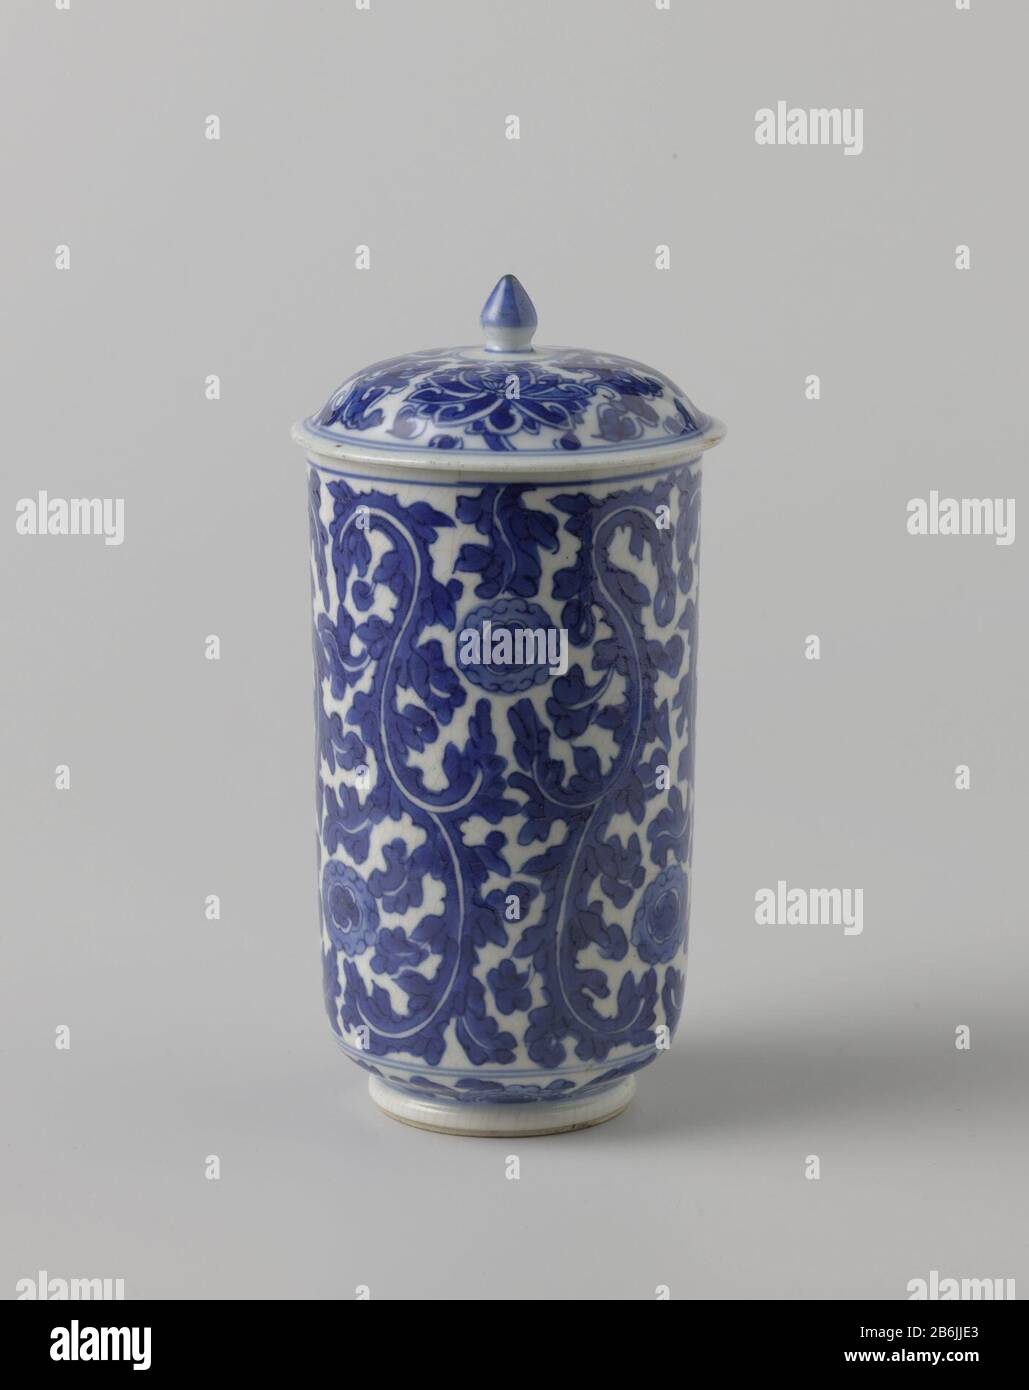 Lid of cylindrical cup with leaf motif Deksel van cilindrische beker met deksel van porselein, beschilderd in onderglazuur blauw. Versierd met een doorlopend, krullend bladmotief afgewisseld met bloemrozetten (tijgerlelie-motief). Niet bijbehorend deksel met lotusranken. Een chip in de deksel. Blauw-wit. Manufacturer : pottenbakker: anoniemPlaats manufacture: China Dating: ca. 1680 - ca. 1720School / stijl: Qing-dynastie (1644-1912) / Kangxi-periode (1662-1722) Physical kenmerken: porselein met onderglazuur blauw Material: porselein glazuur kobalt Techniek: draaiend bewerken / bakken / schilde Stock Photo